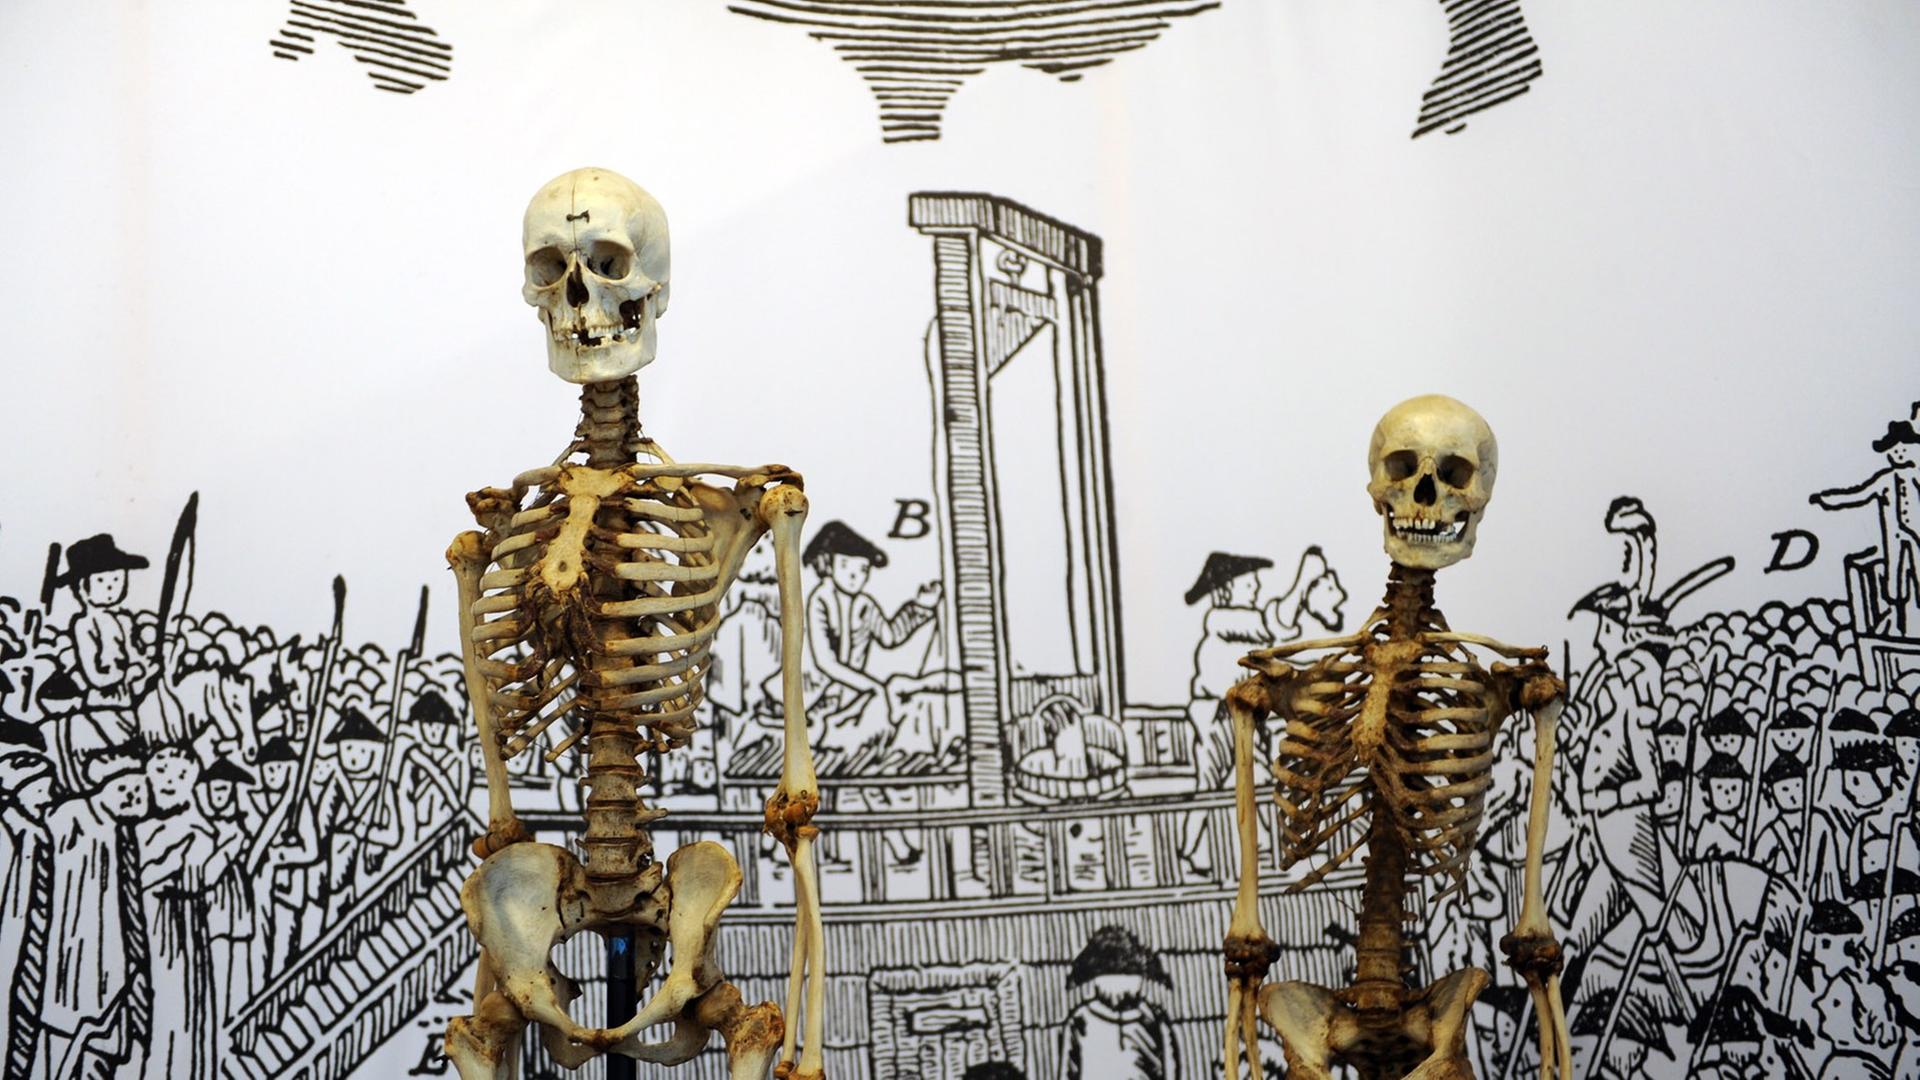 Zwei Skelette stehen am Mittwoch (25.01.2012) im Kasseler Museum vor einer Leinwand mit Hinrichtungsszene. Das linke Skelett ist vermutlich das des Räubers "Schinderhannes", das rechte das seines Kumpanen, dem "Schwarzen Jonas". Sie sind im Rahmen der Ausstellung "Galgen, Rad und Scheiterhaufen - Einblicke in Orte des Grauens zu sehen".